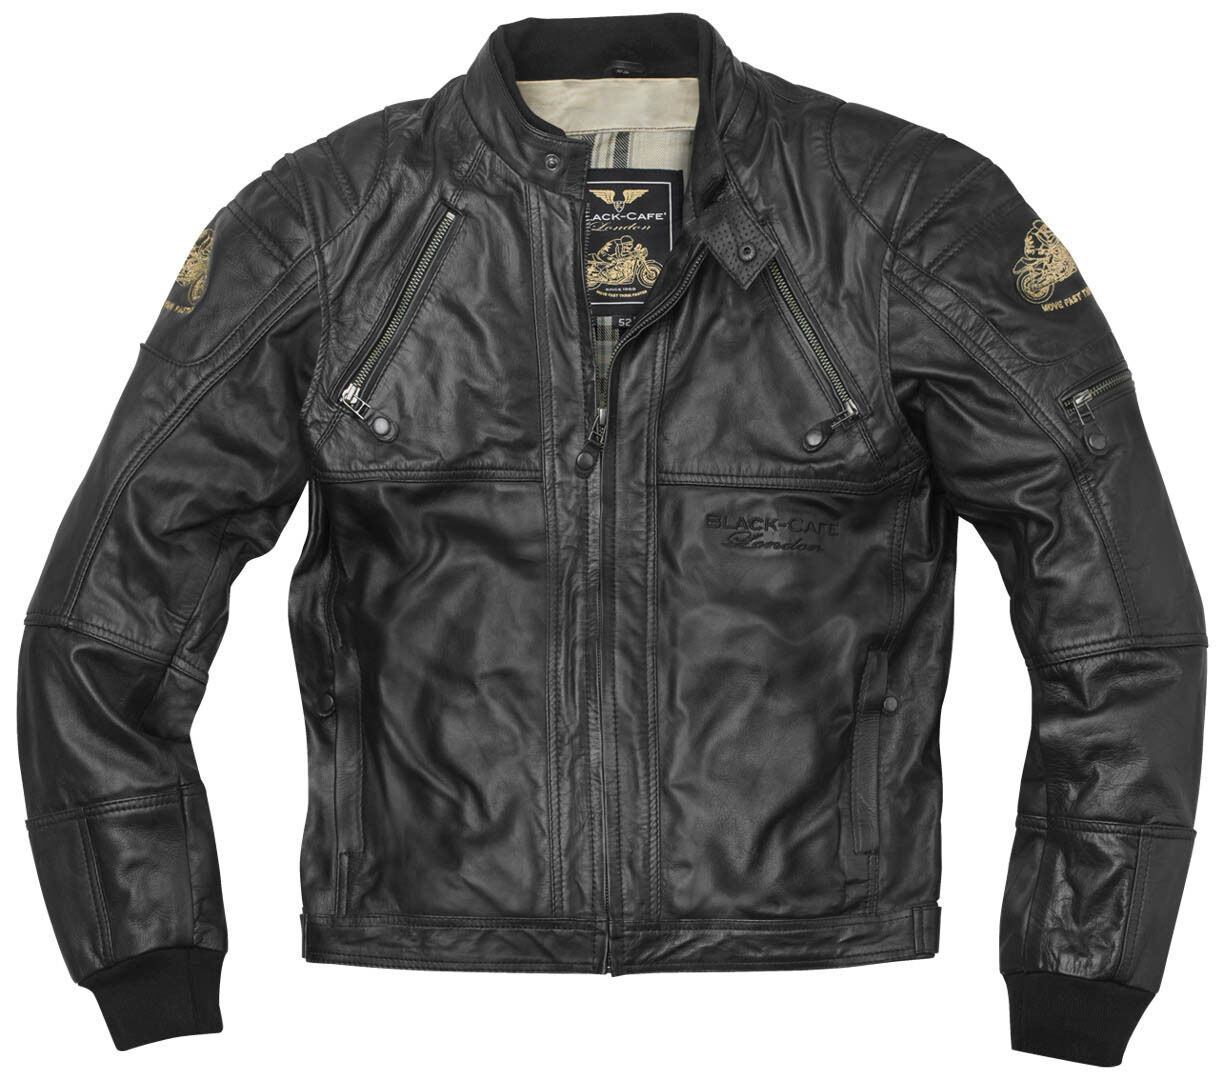 Black-Cafe London Dallas Motocyklová kožená bunda 54 Černá